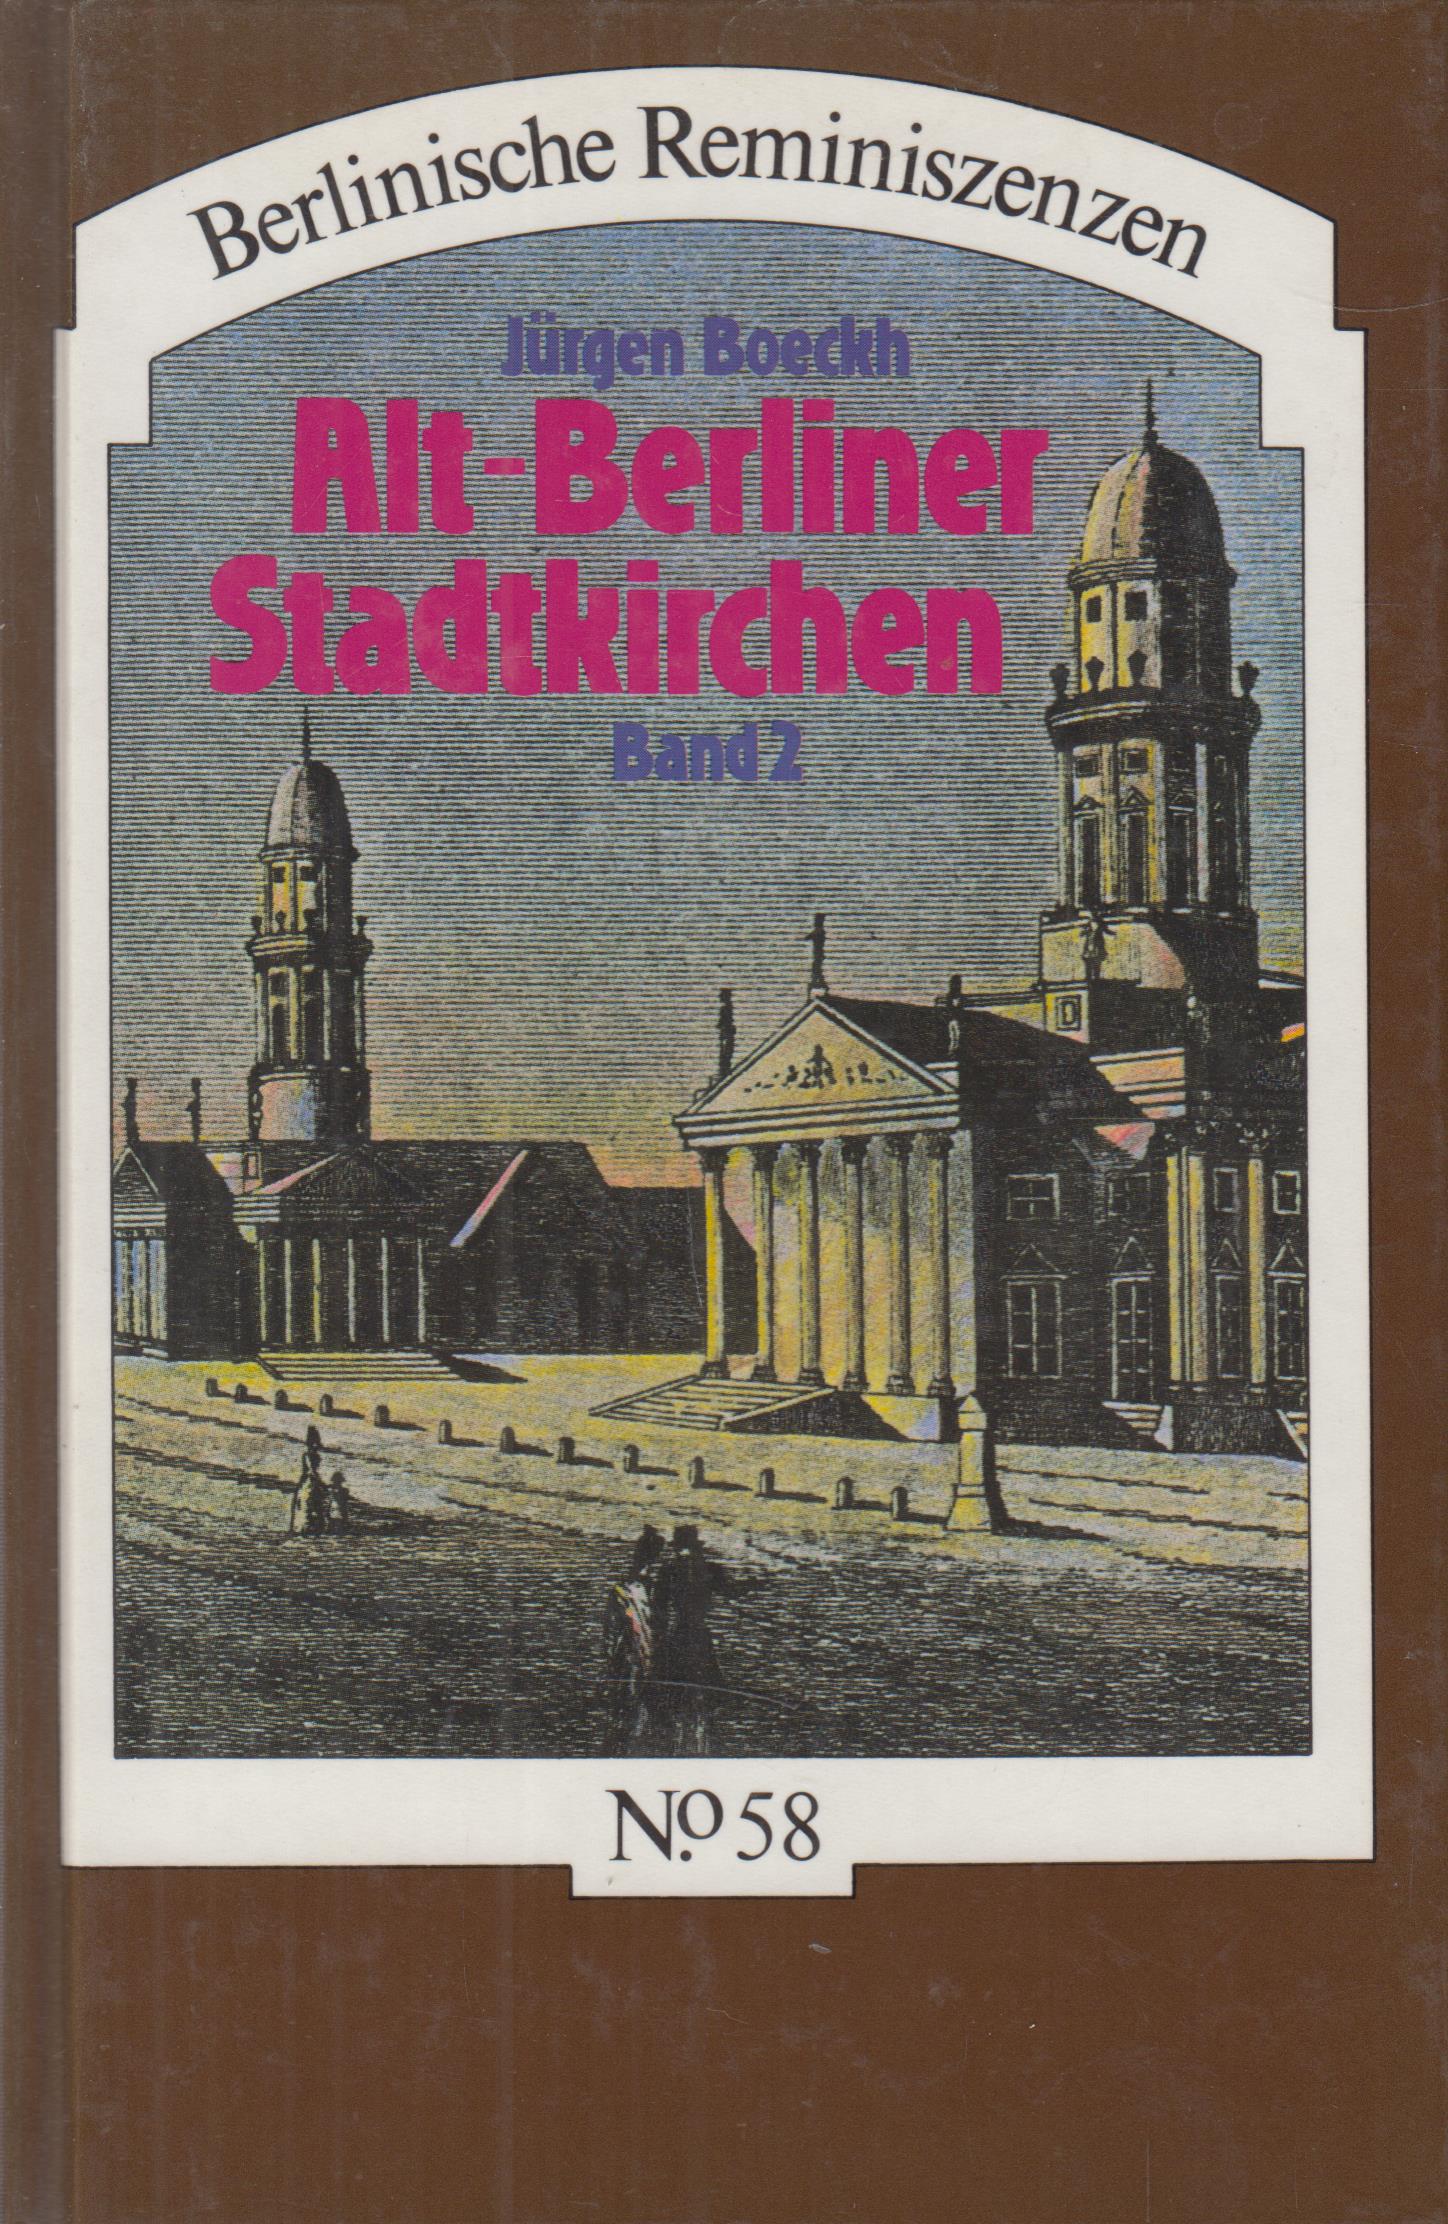 Alt-Berliner Stadtkirchen Band 2. Von der Dorotheenstädtischen Kirche bis zur St.-Hedwigs-Kathedrale - Boeckh, Jürgen